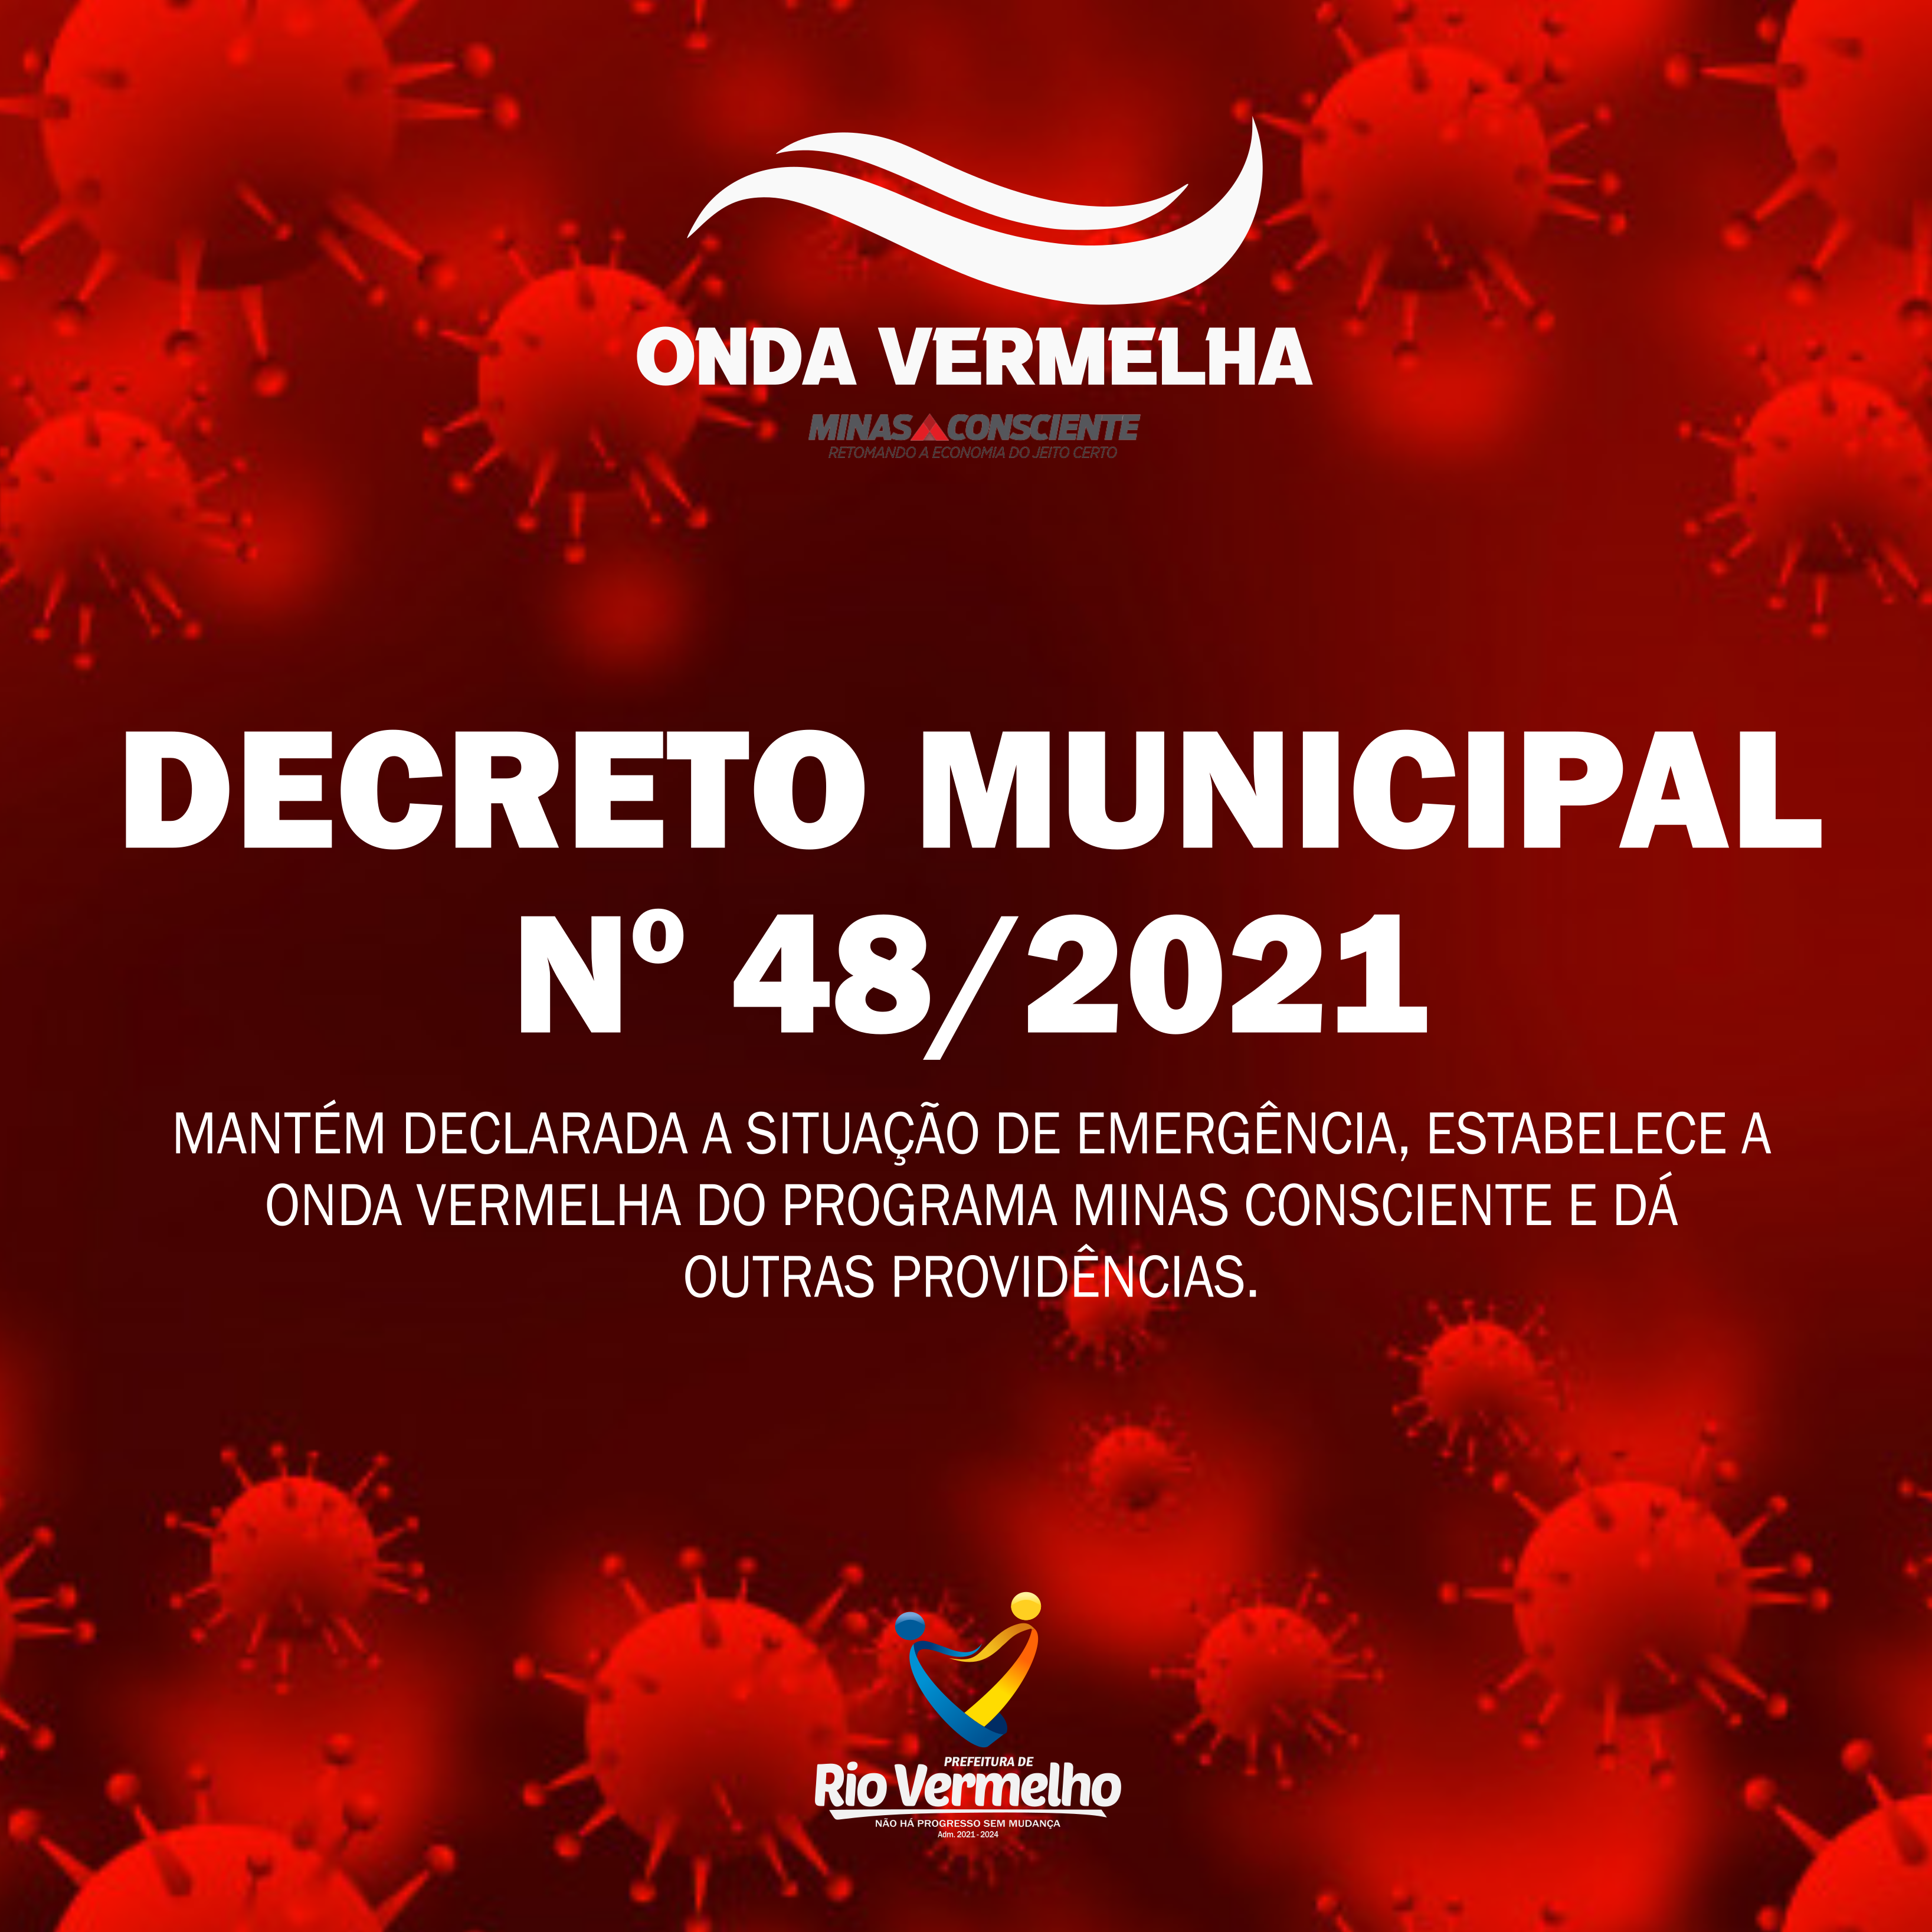 You are currently viewing DECRETO MUNICIPAL Nº 48 DE 29 DE ABRIL DE 2021 – Estabelece a “Onda Vermelha” do Programa Minas Consciente